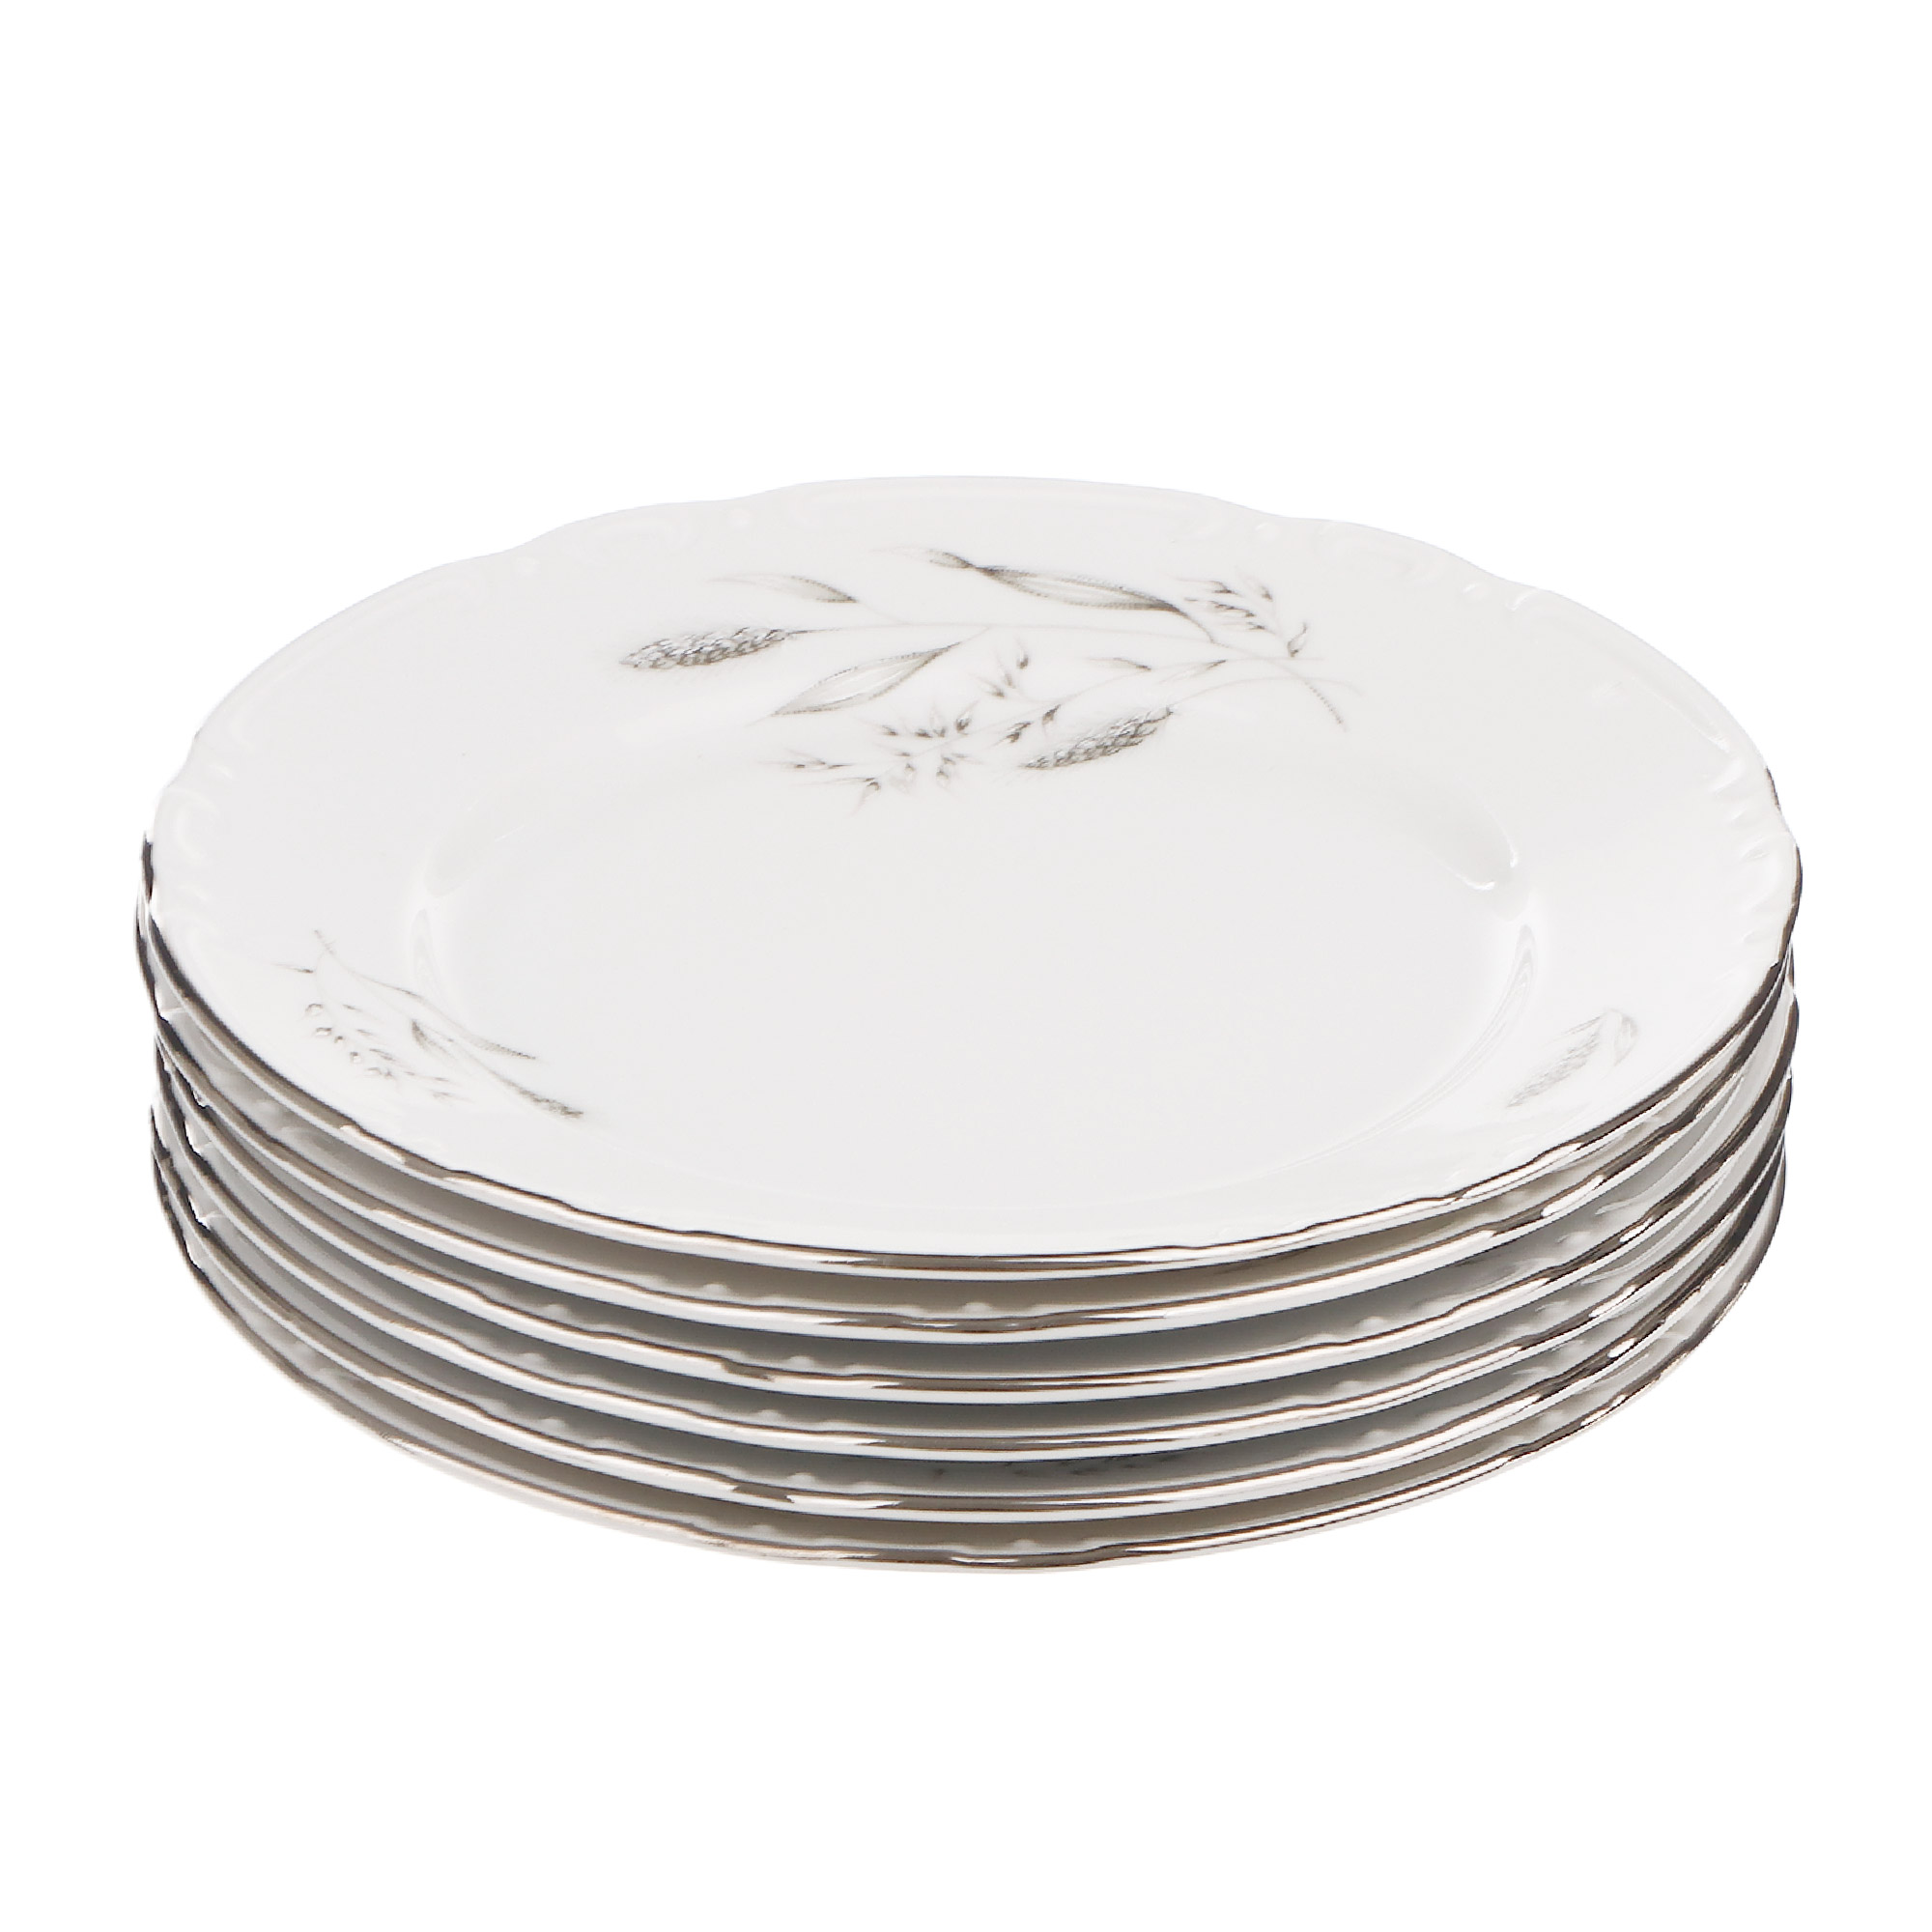 Набор десертных тарелок Thun1794 декор серебряные колосья, отводка платина 17 см 6 шт набор тарелок thun1794 coupsoup декор серебряные колосья отводка платина 19 см 6 шт